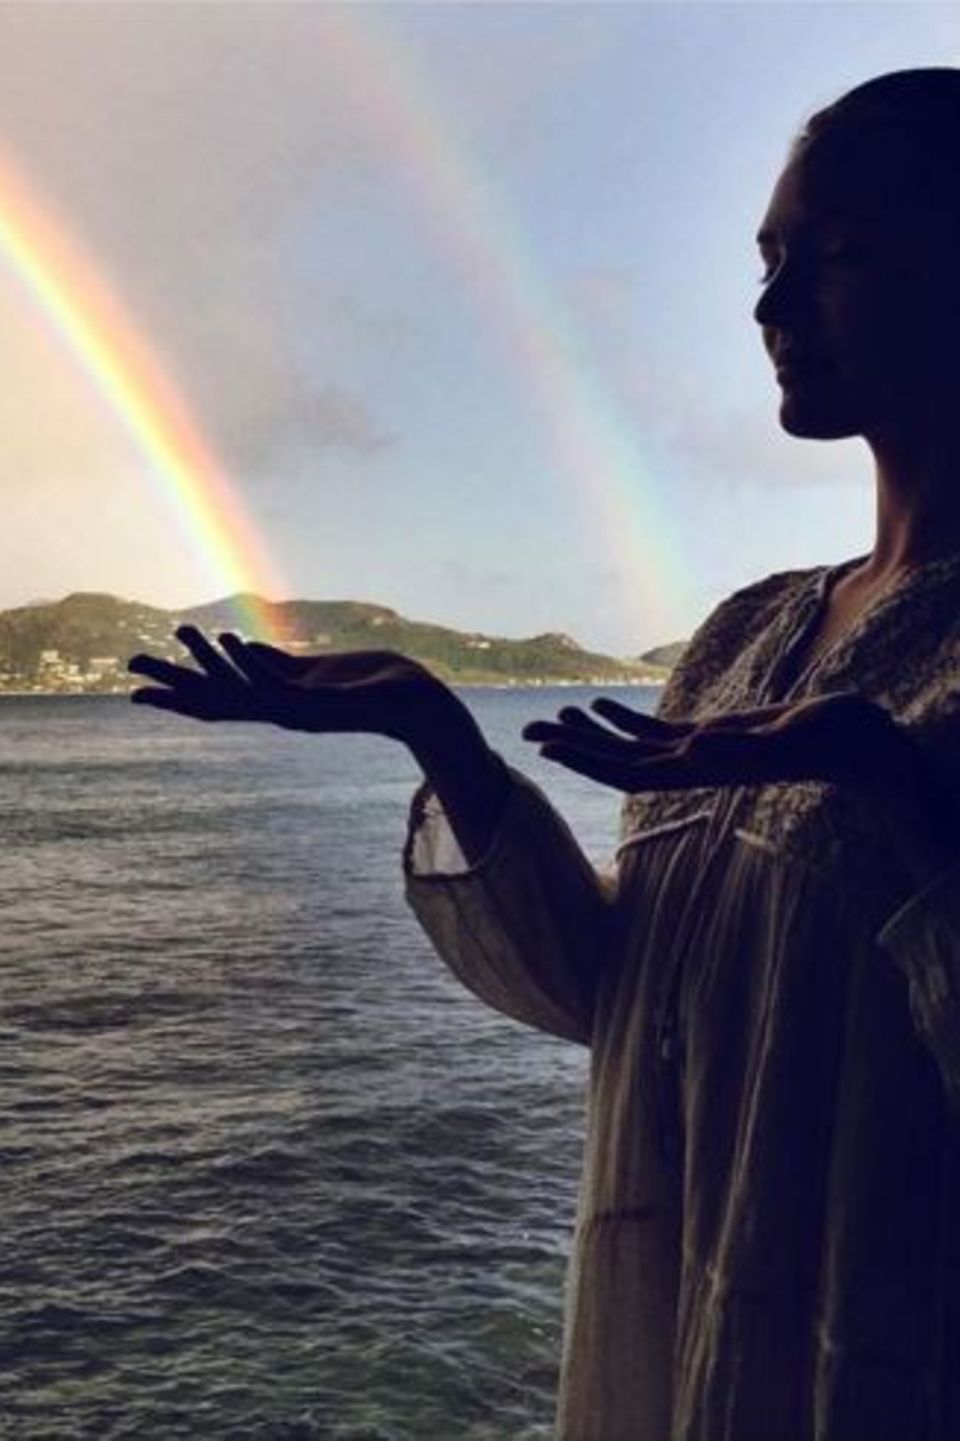 Dezember 2015  Candice Swanepoel hat magische Kräfte und zaubert auf einer karibischen Insel gleich mehrere Regenbögen.